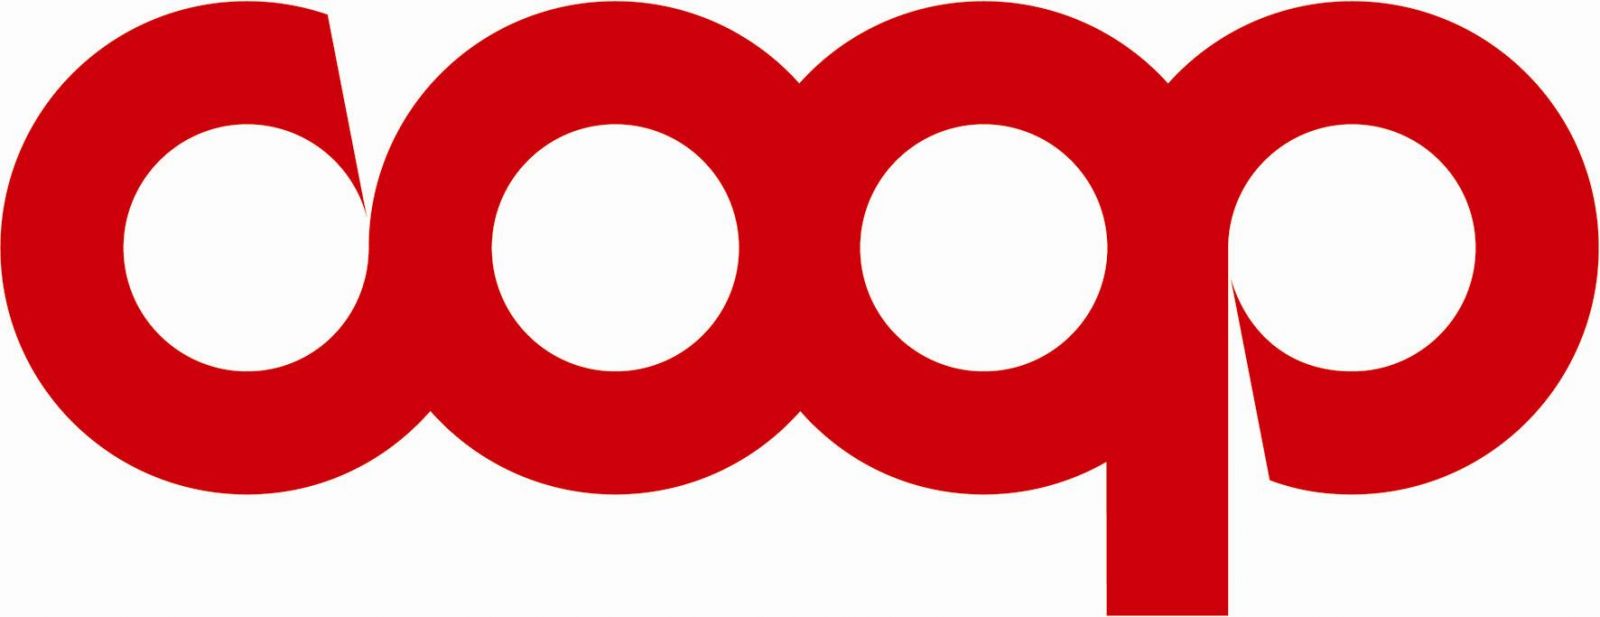 Coop ipercoop Logo photo - 1